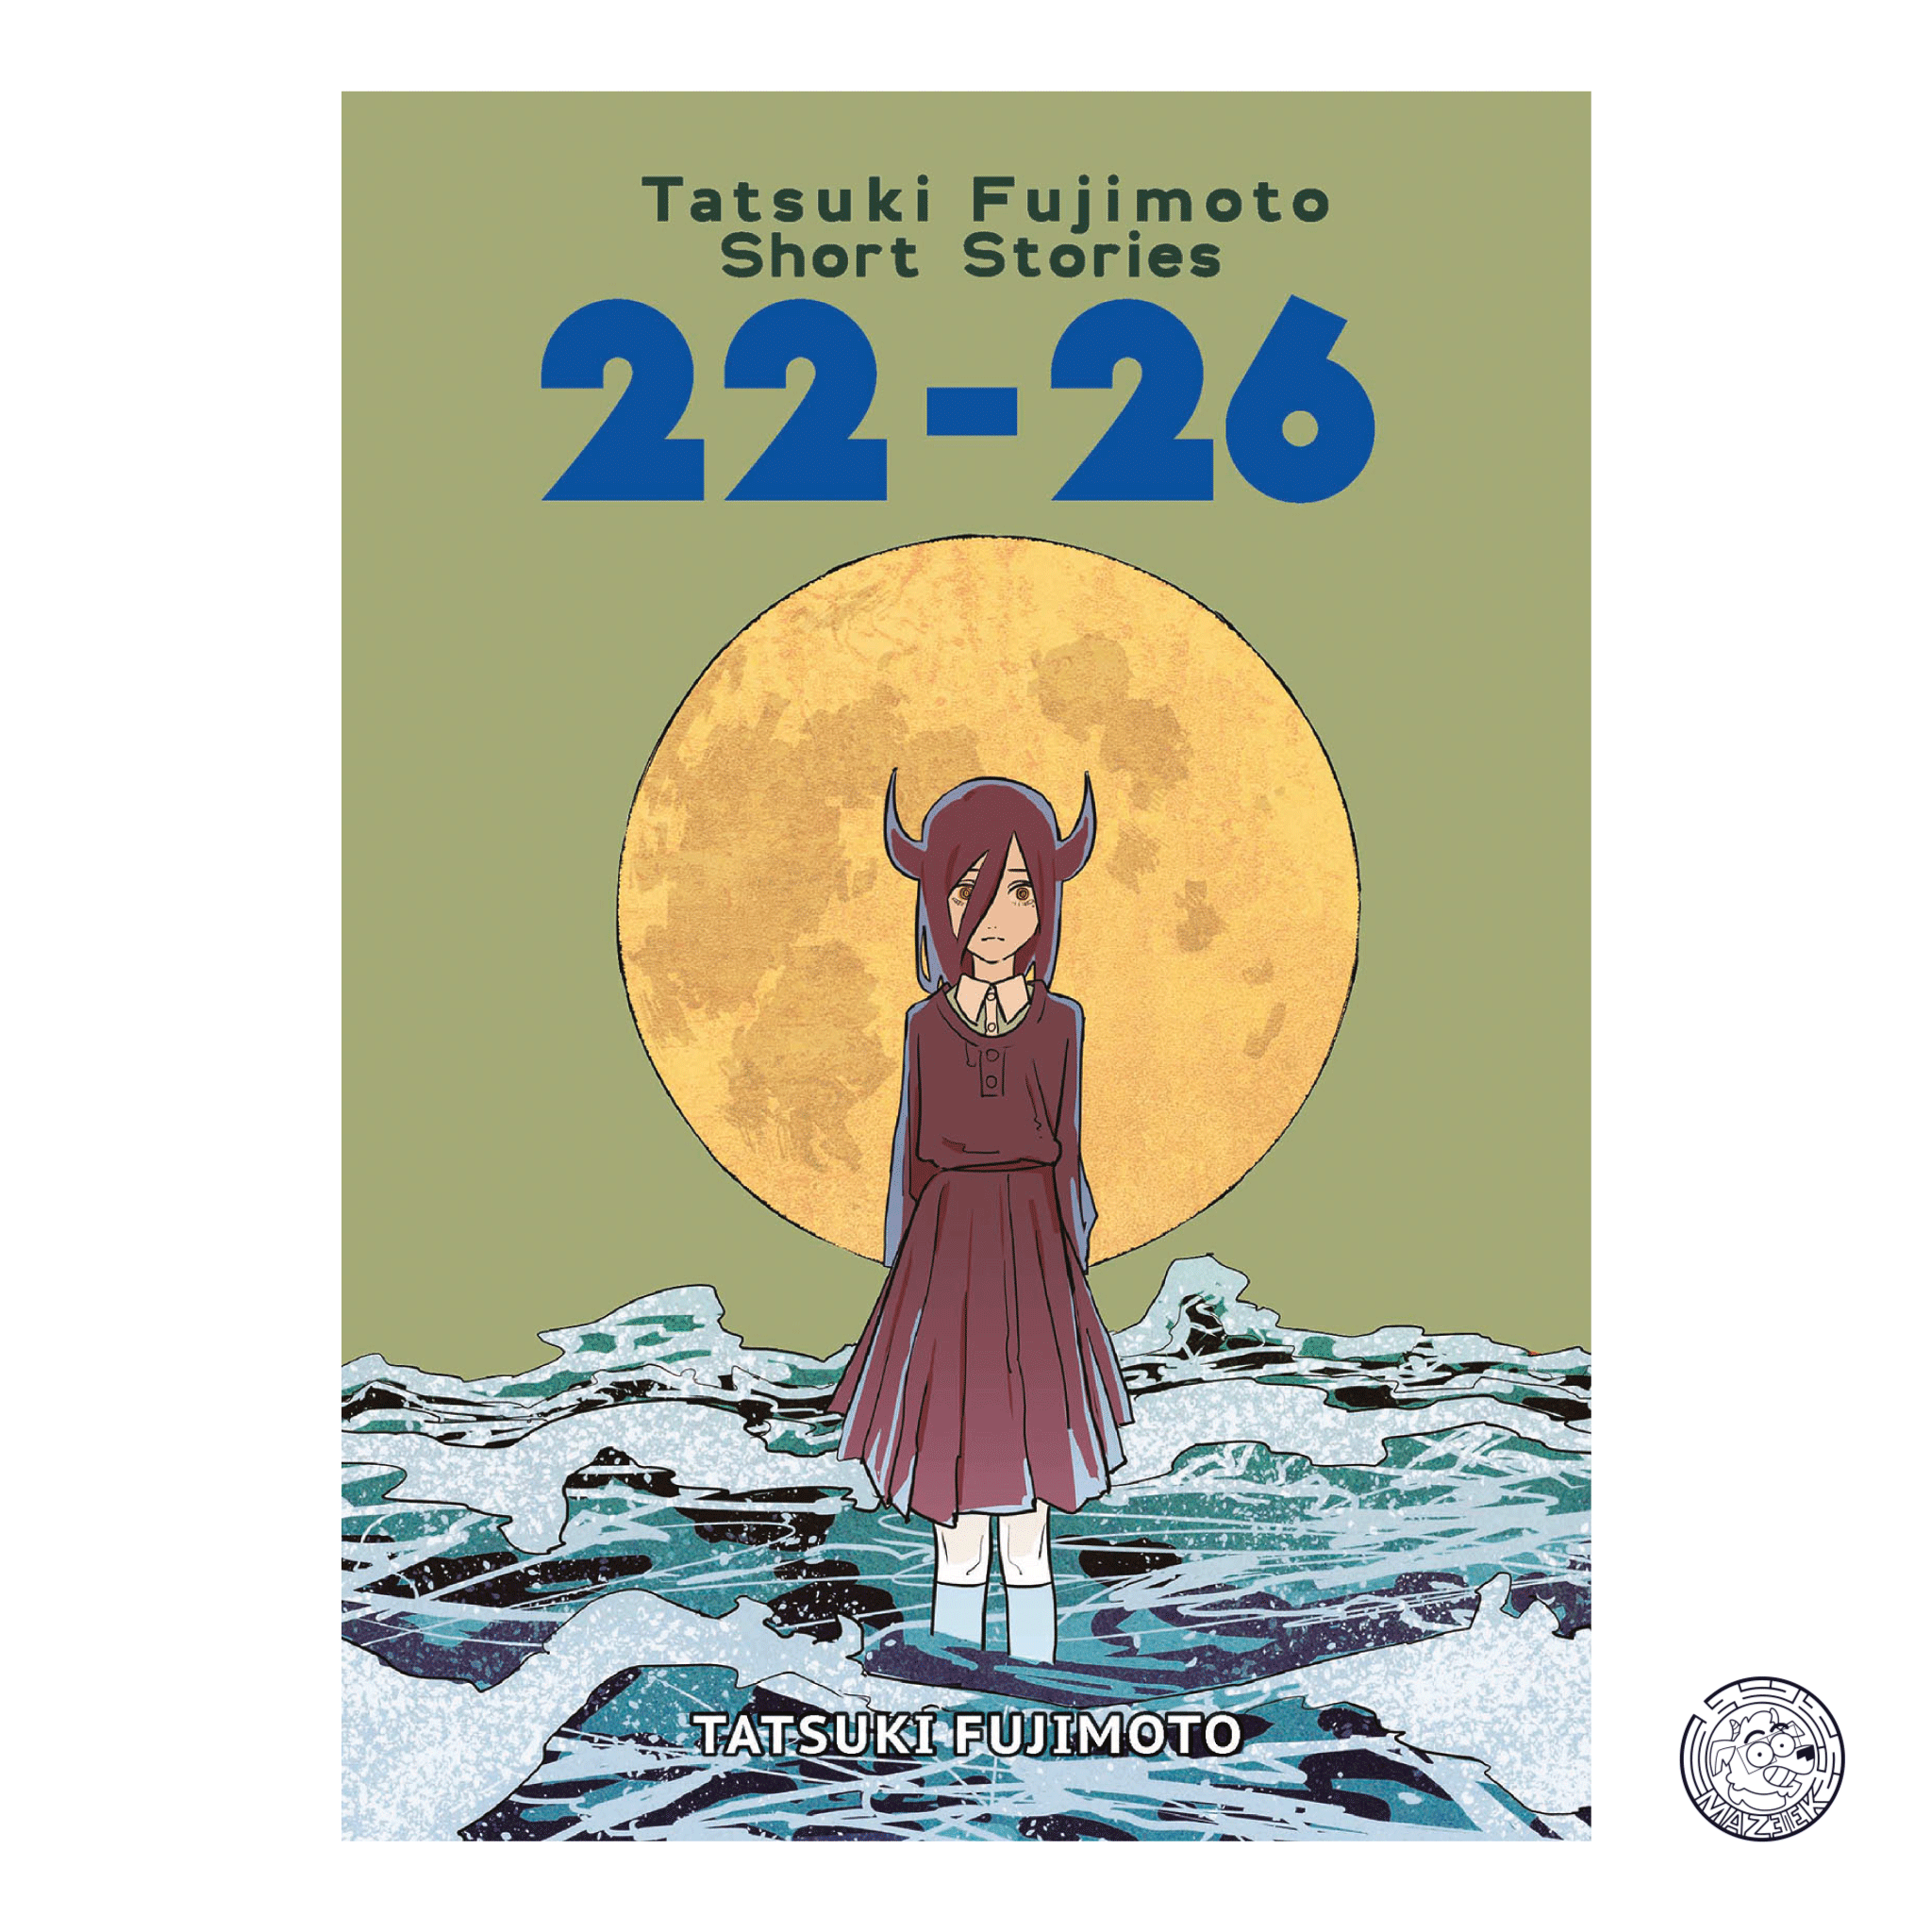 Tatsuki Fujimoto Short Stories: 22-26 - Volume Unico - Regular